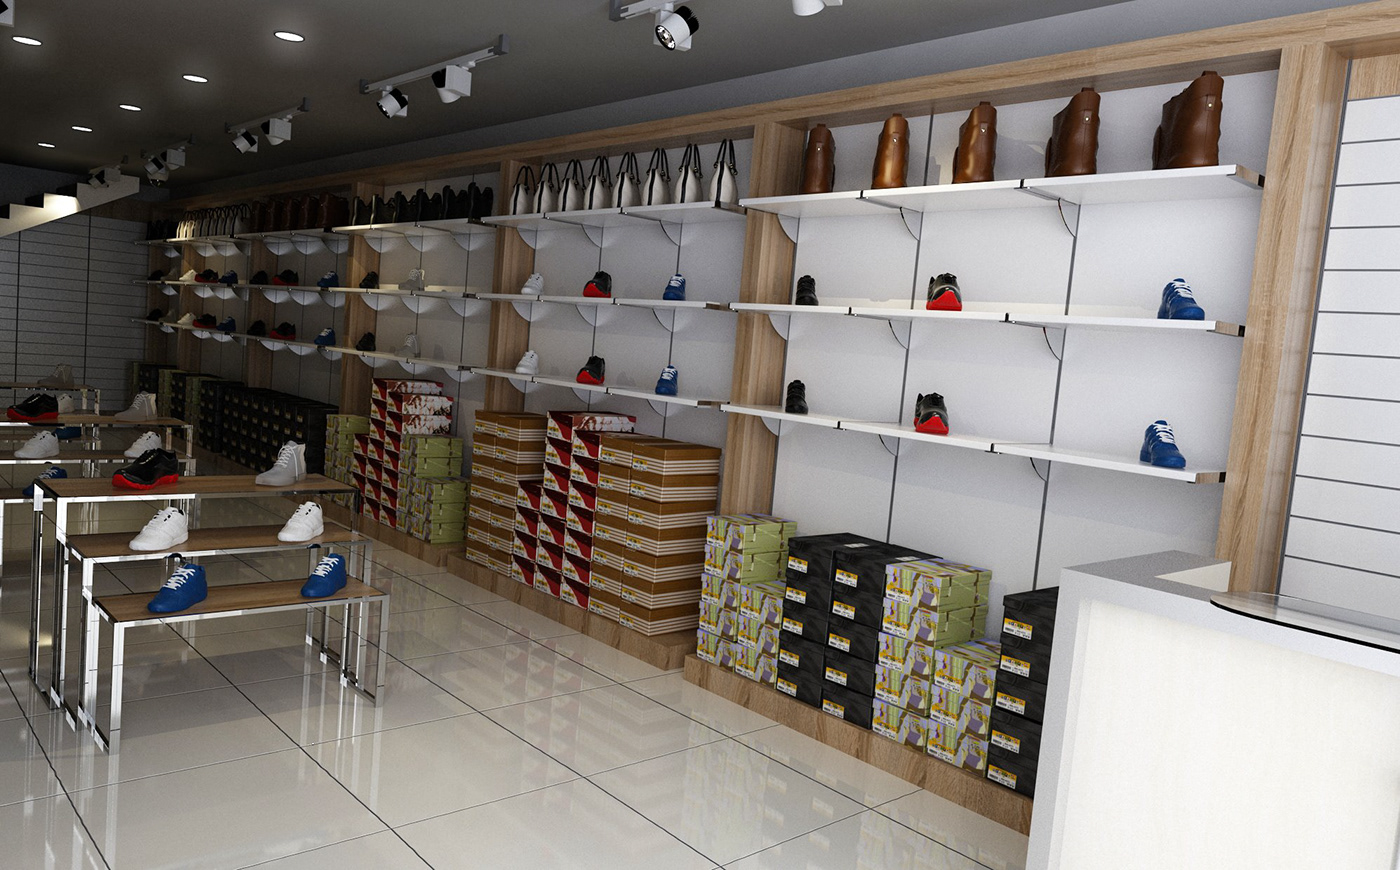 avm ayakkabı ayakkabımağazası Magaza raf Retaildesign Shelf shoe shoeshop Shopping